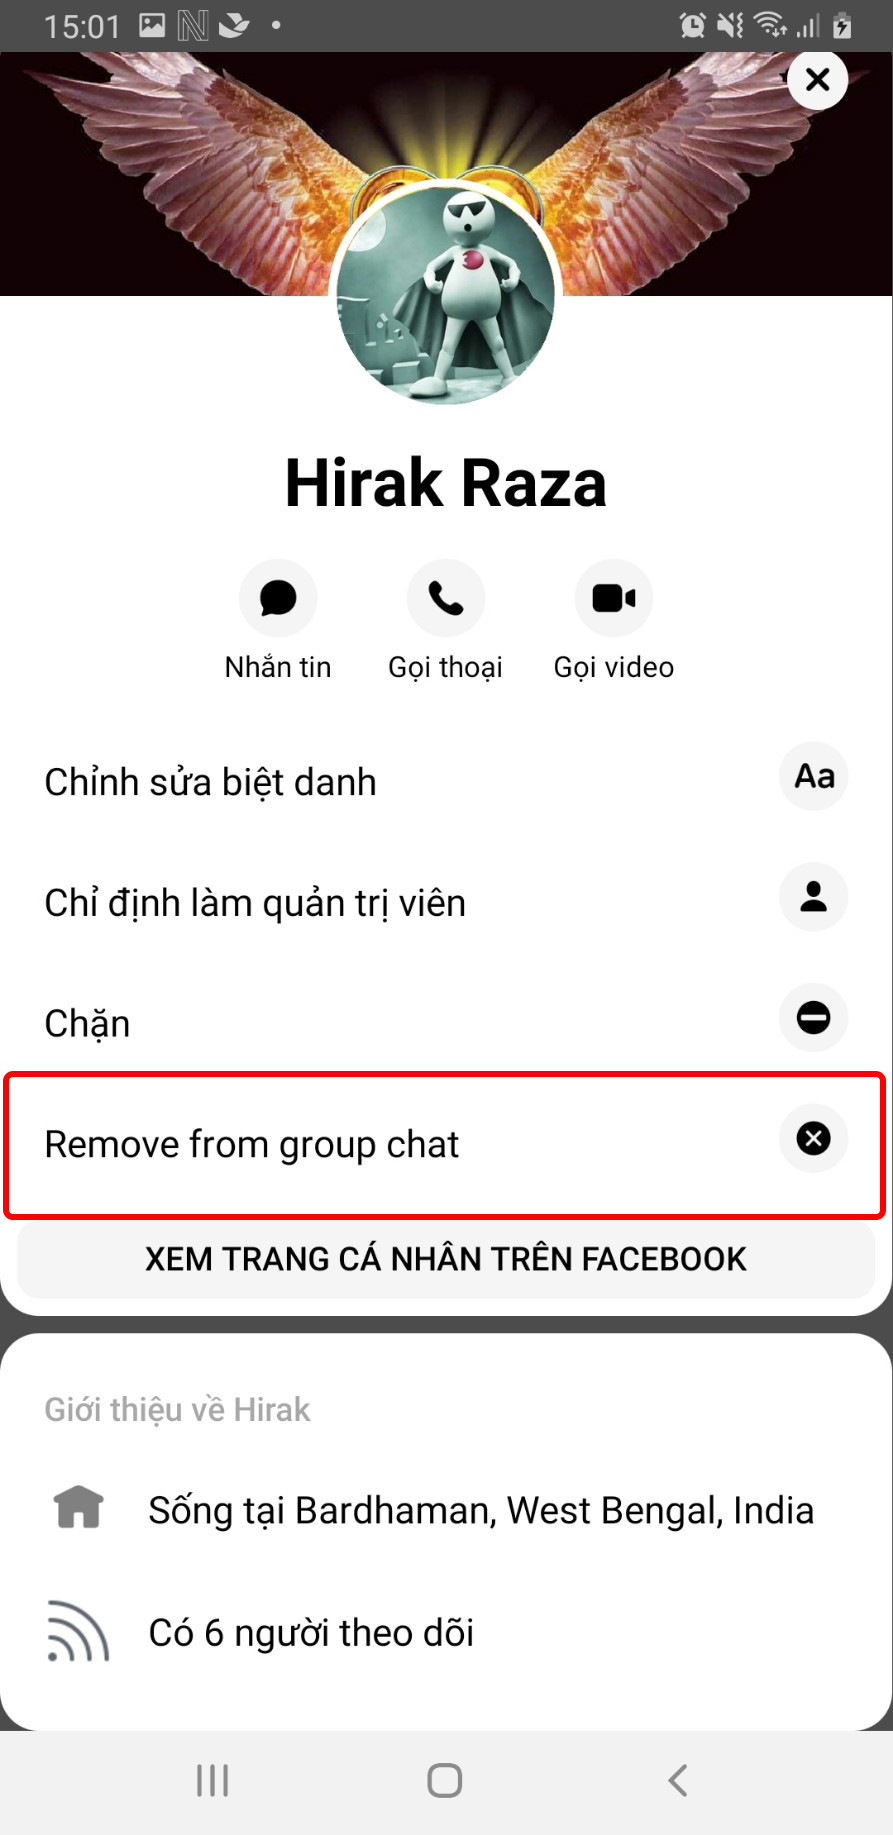 Chọn Remove frome group chat (xóa ra khỏi nhóm)